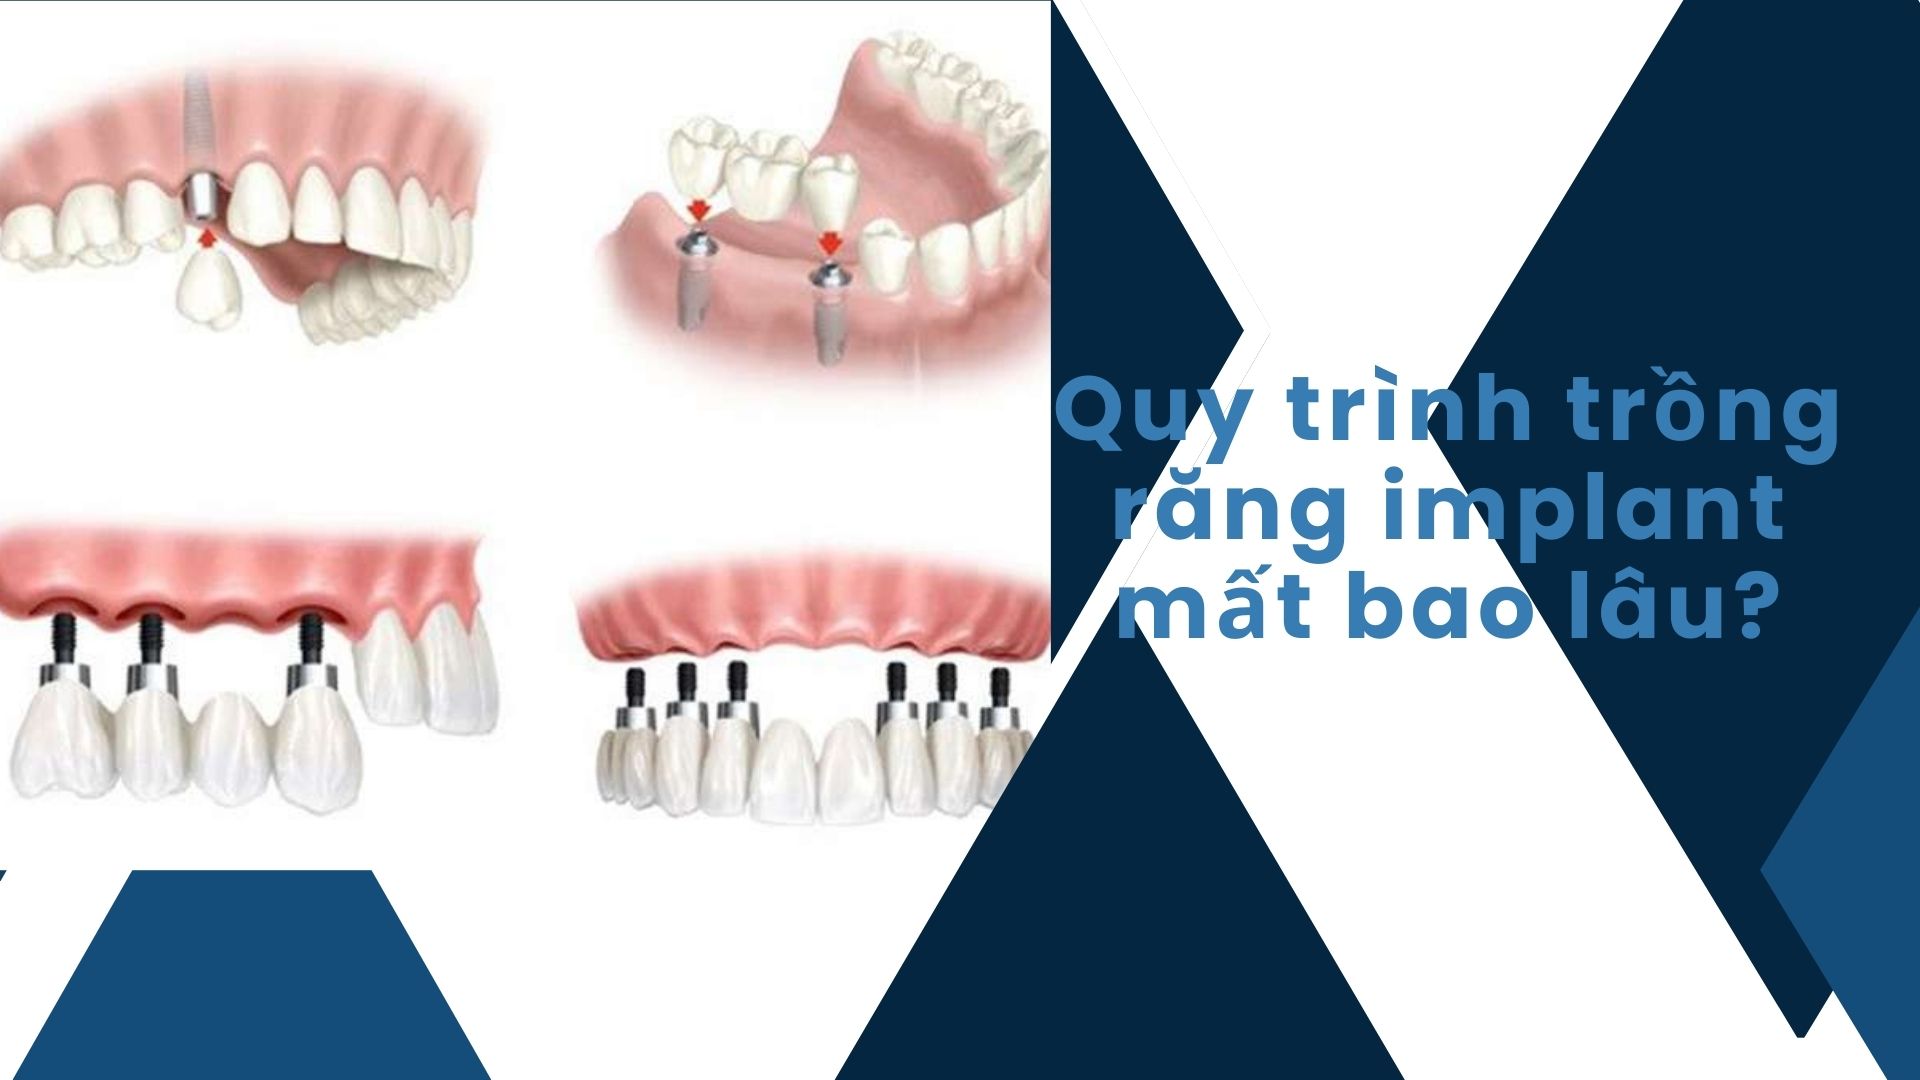 Quy trình trồng răng implant mất bao lâu?